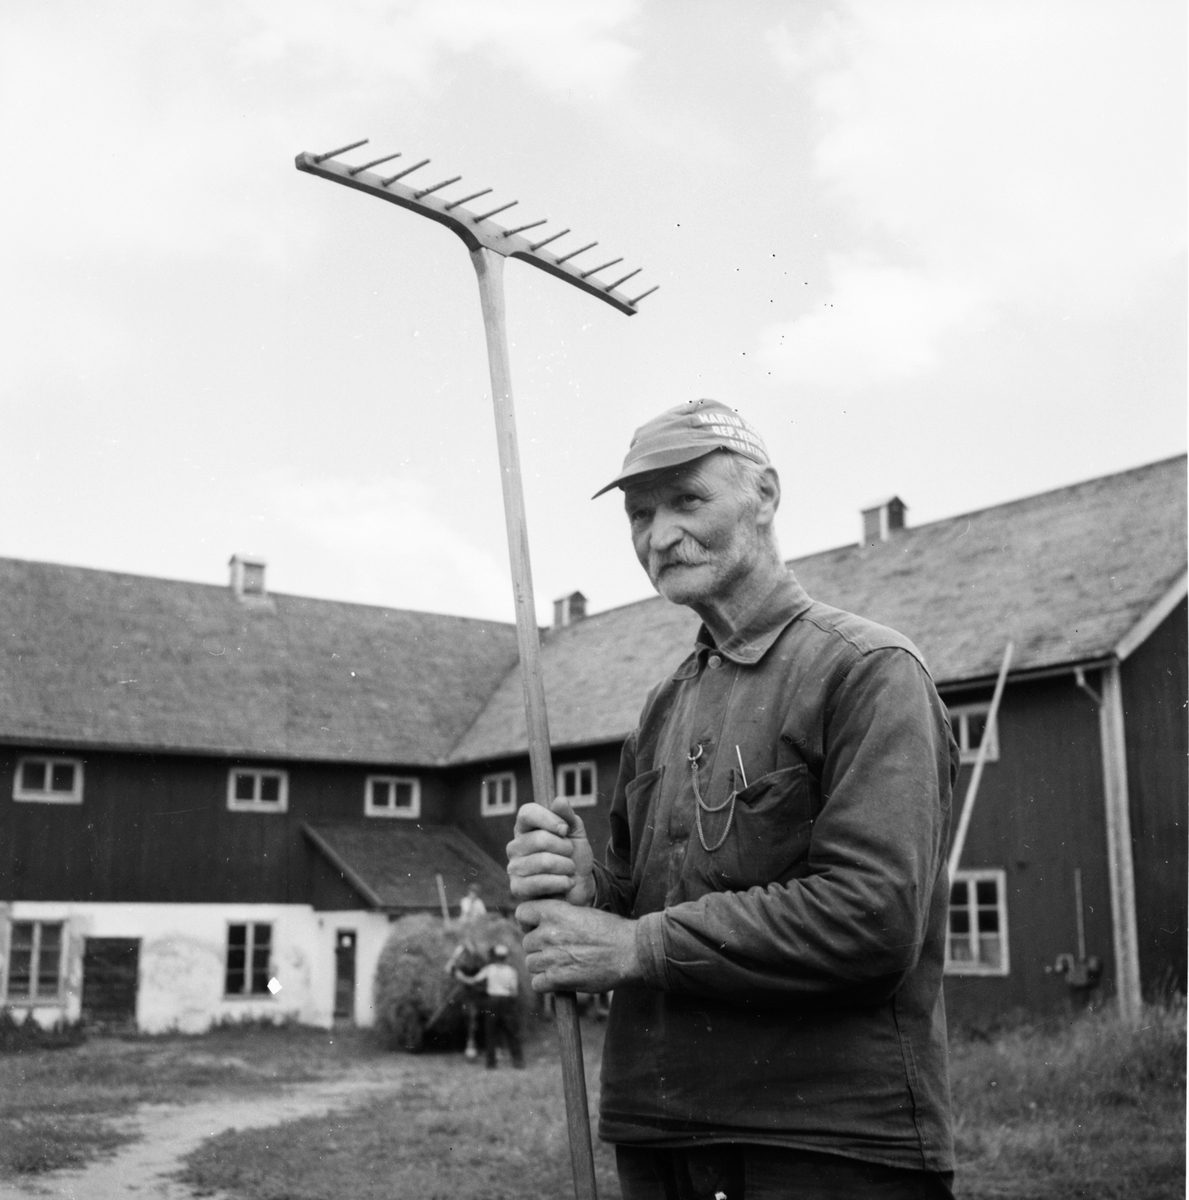 G. Eliasson simskola
Skog, Stråtjära
23/8 1959